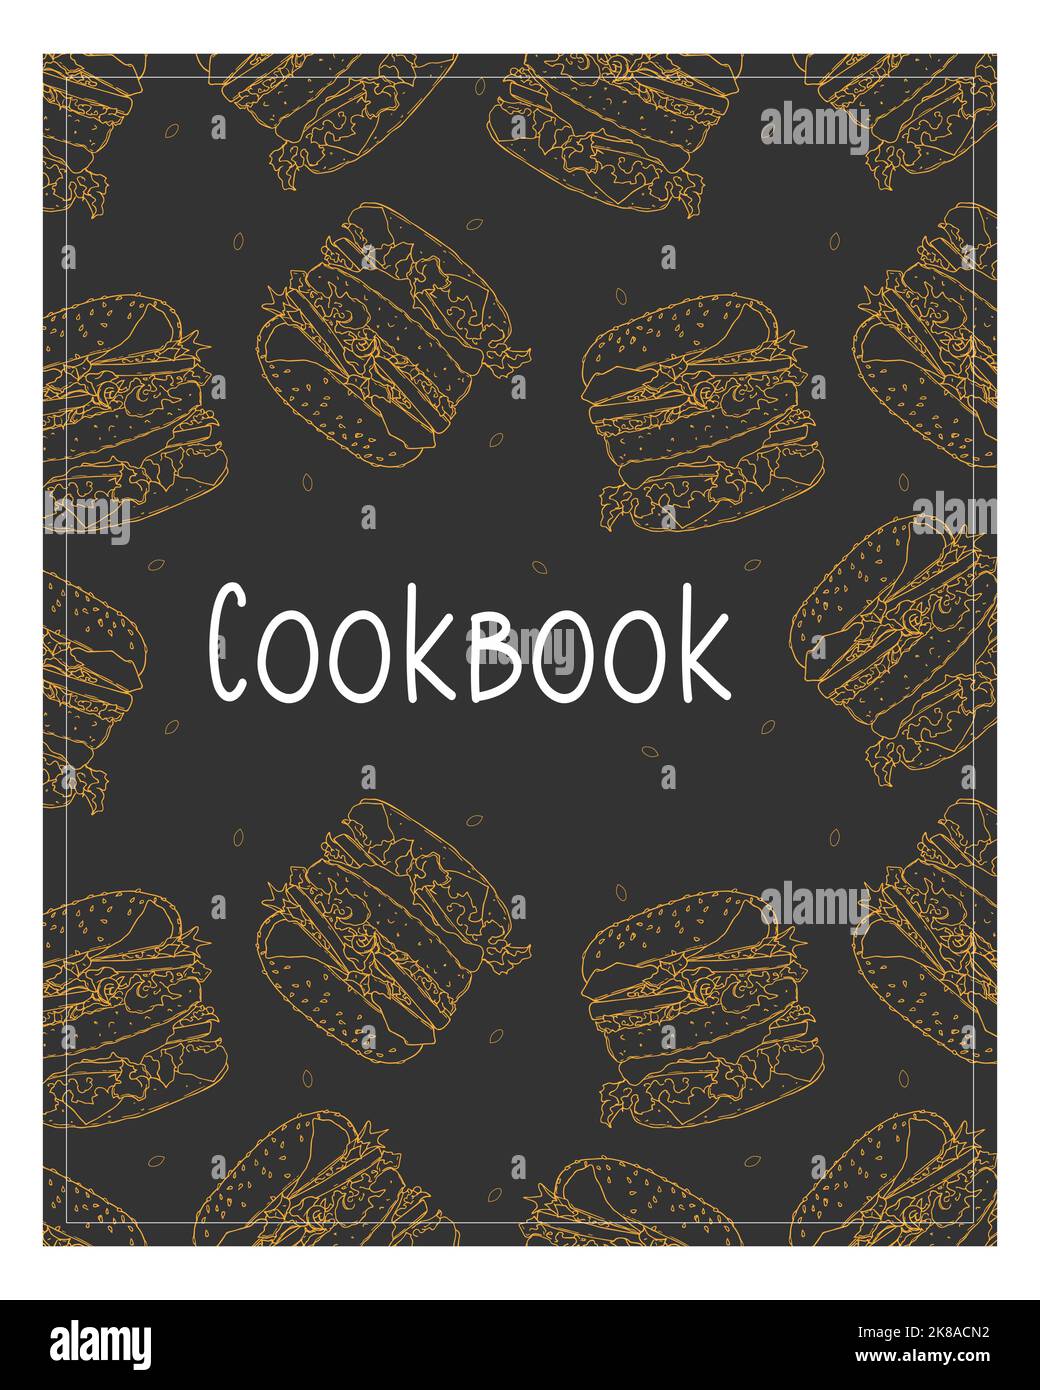 Kochbuch-Hintergrund mit orangefarbenem Burger von Hand gezeichnet. Vektorgrafik Stock Vektor